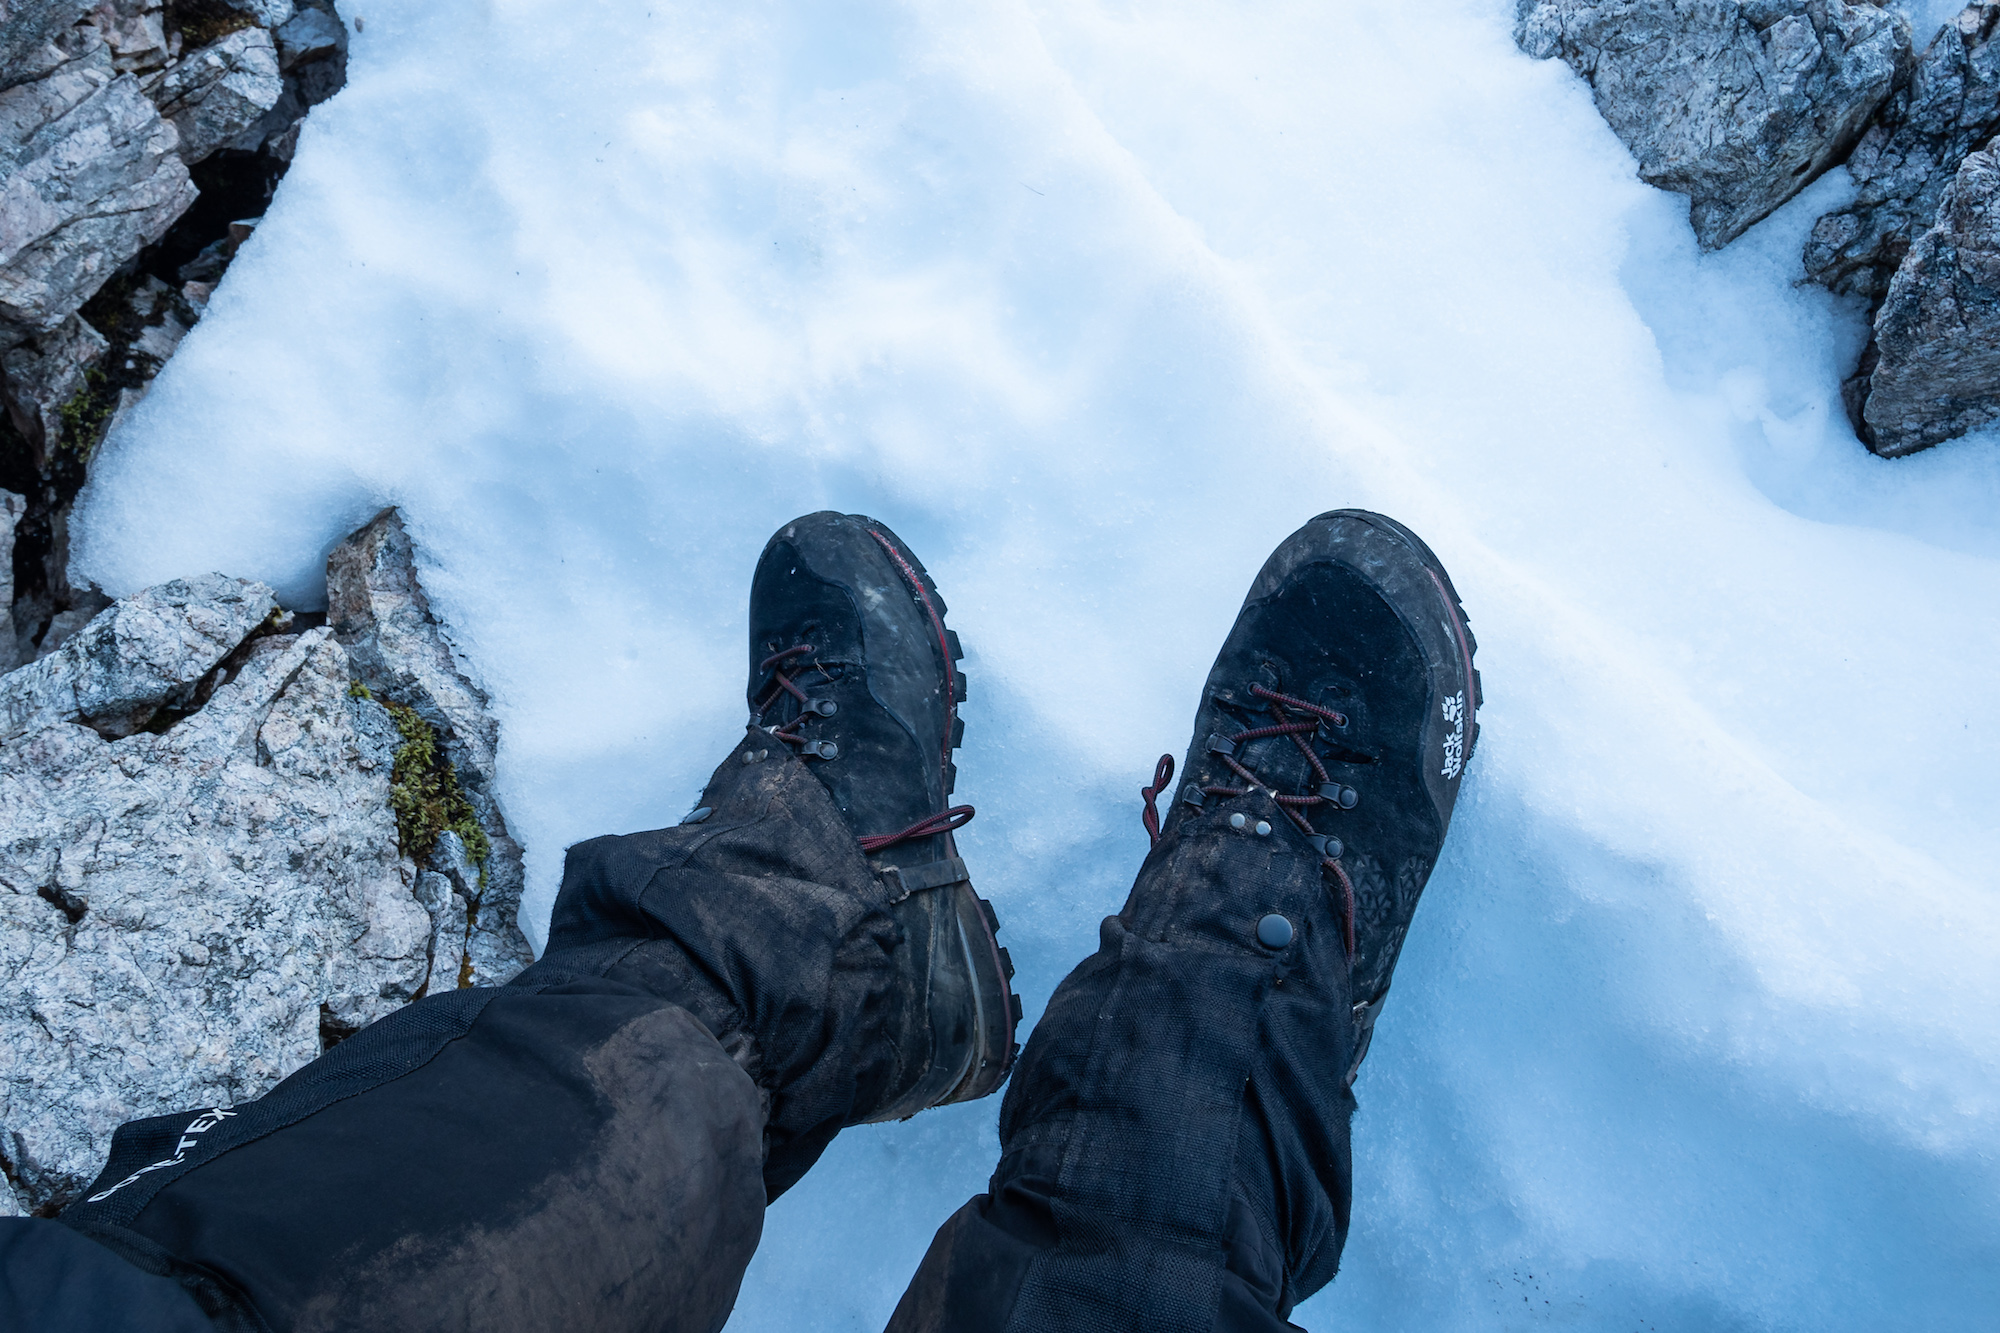 Jack Wolfskin Wilderness Peak Texapore Mid boots | TGO Magazine